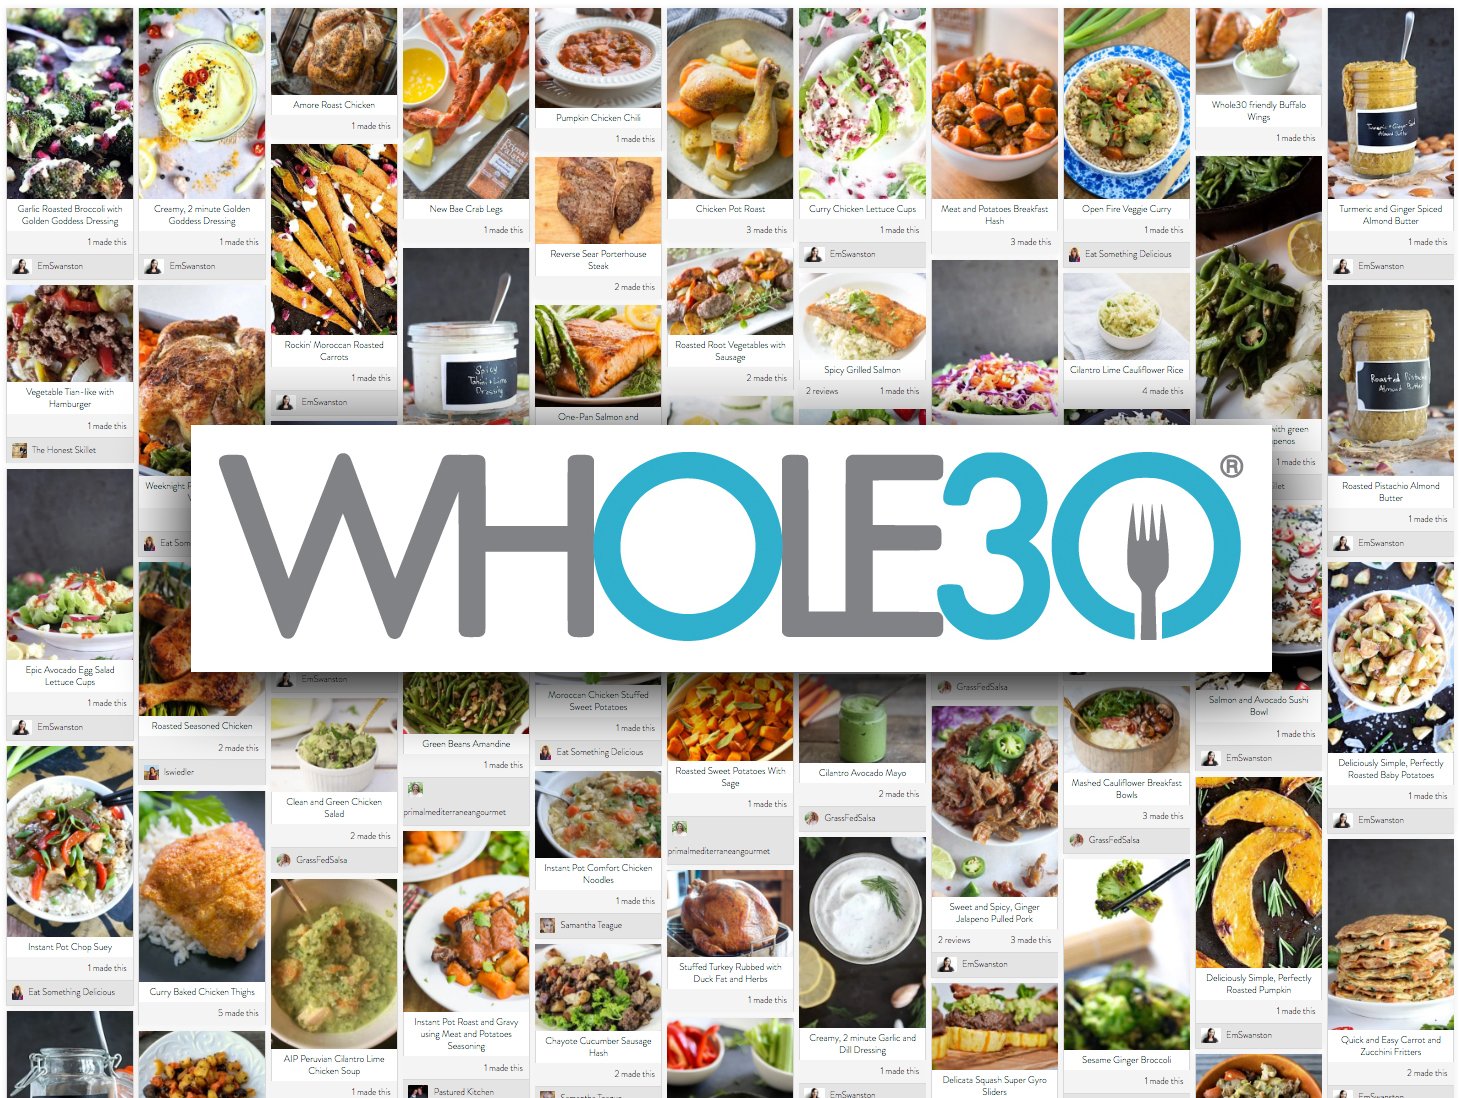 Whole30 là phương pháp giảm cân thế hệ mới, khoa học và không có tác dụng phụ